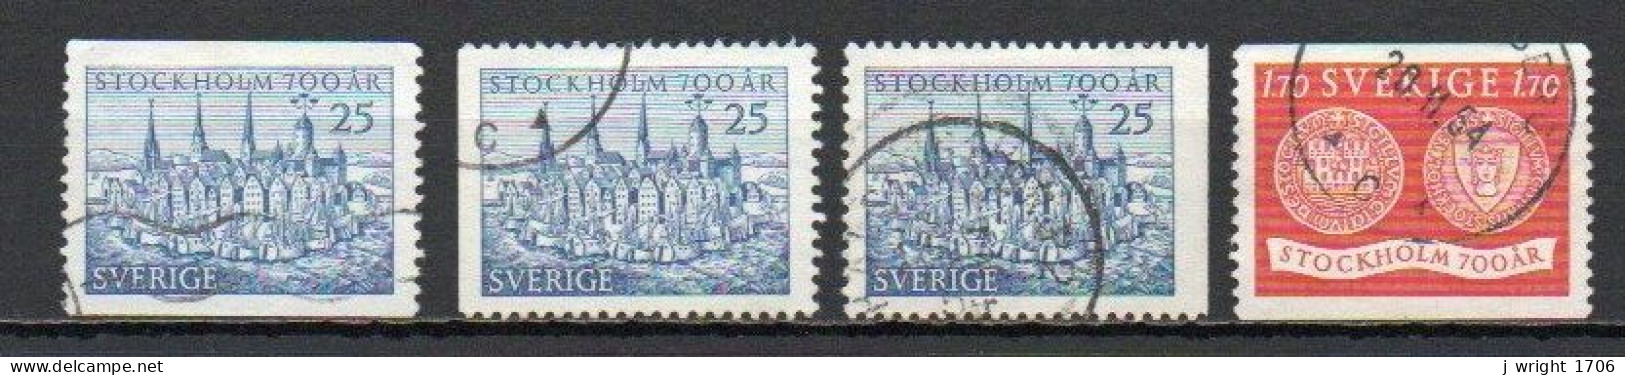 Sweden, 1953, Stockholm 700th Anniv, Set, USED - Gebruikt